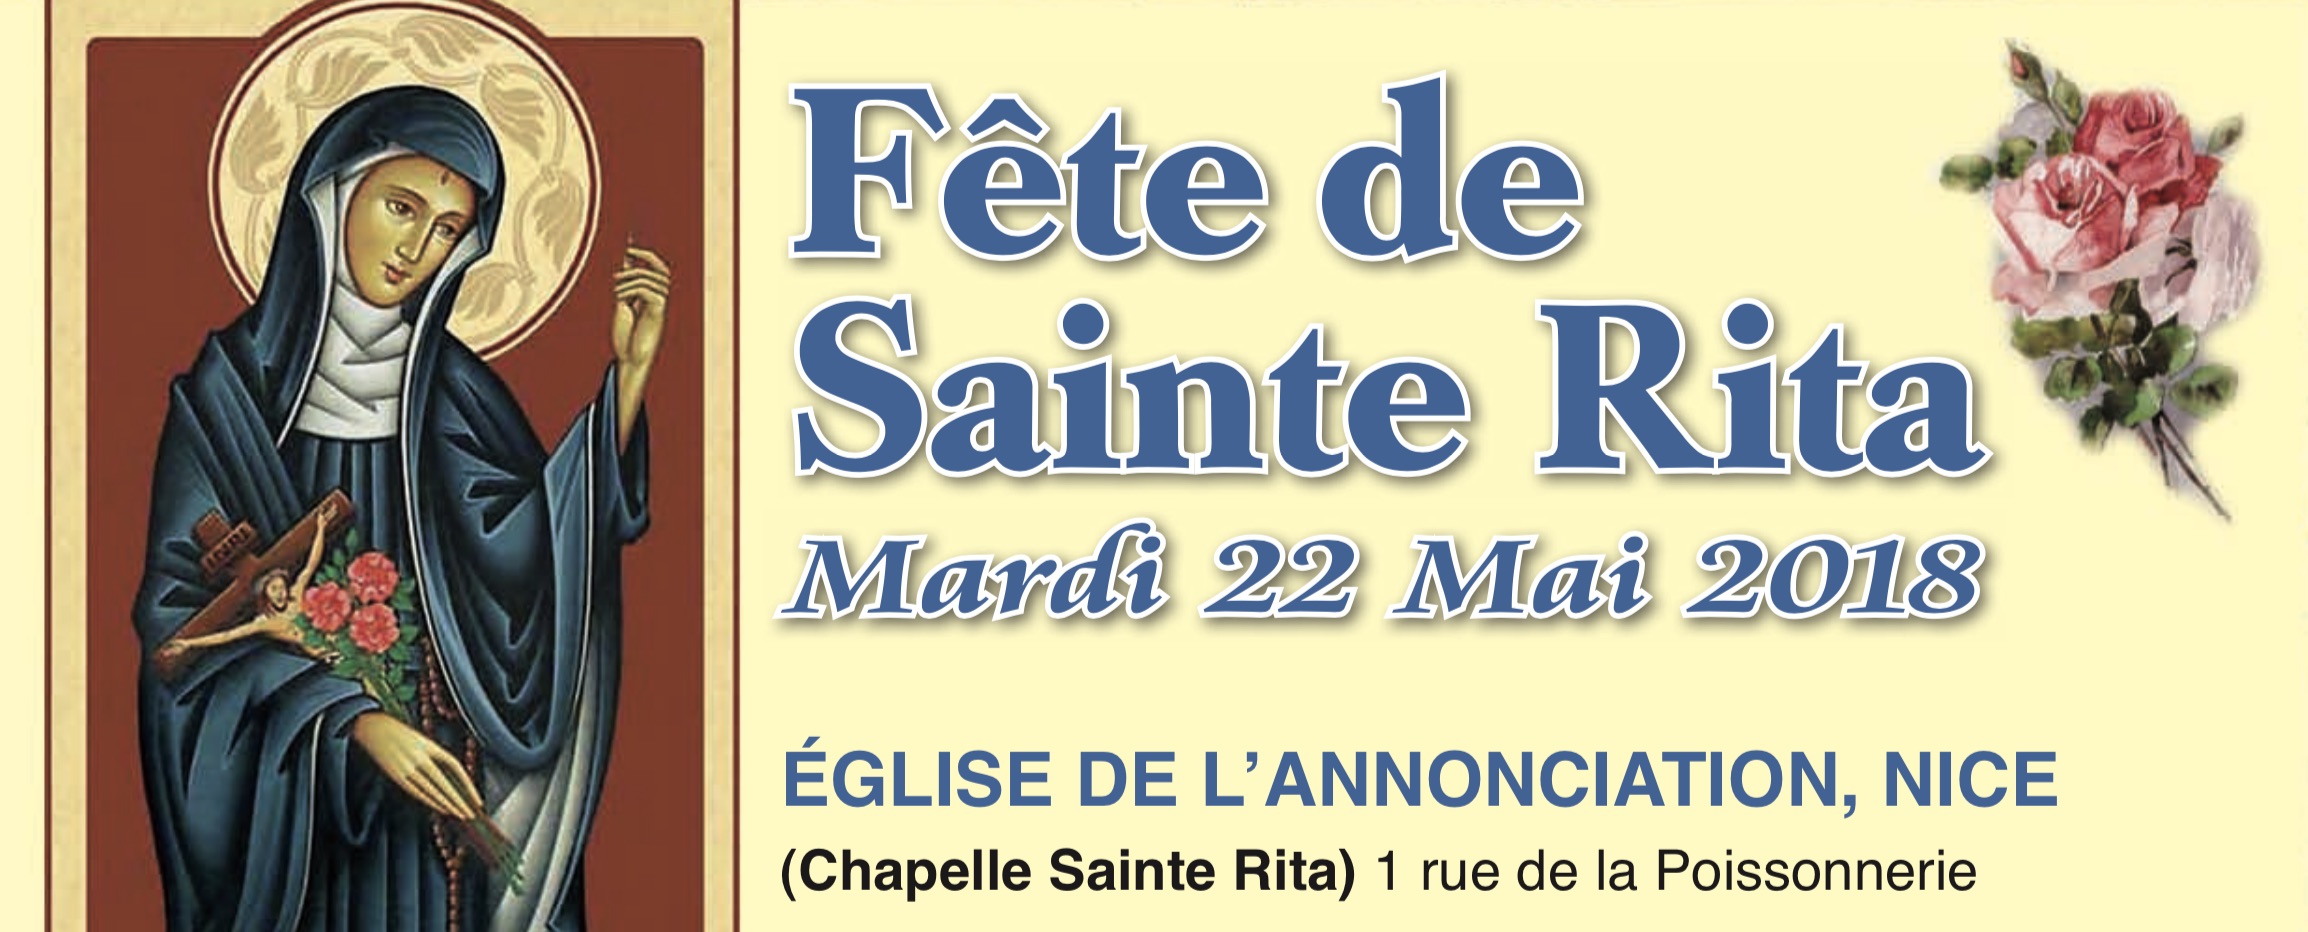 Fete de Sainte Rita 2018 logo